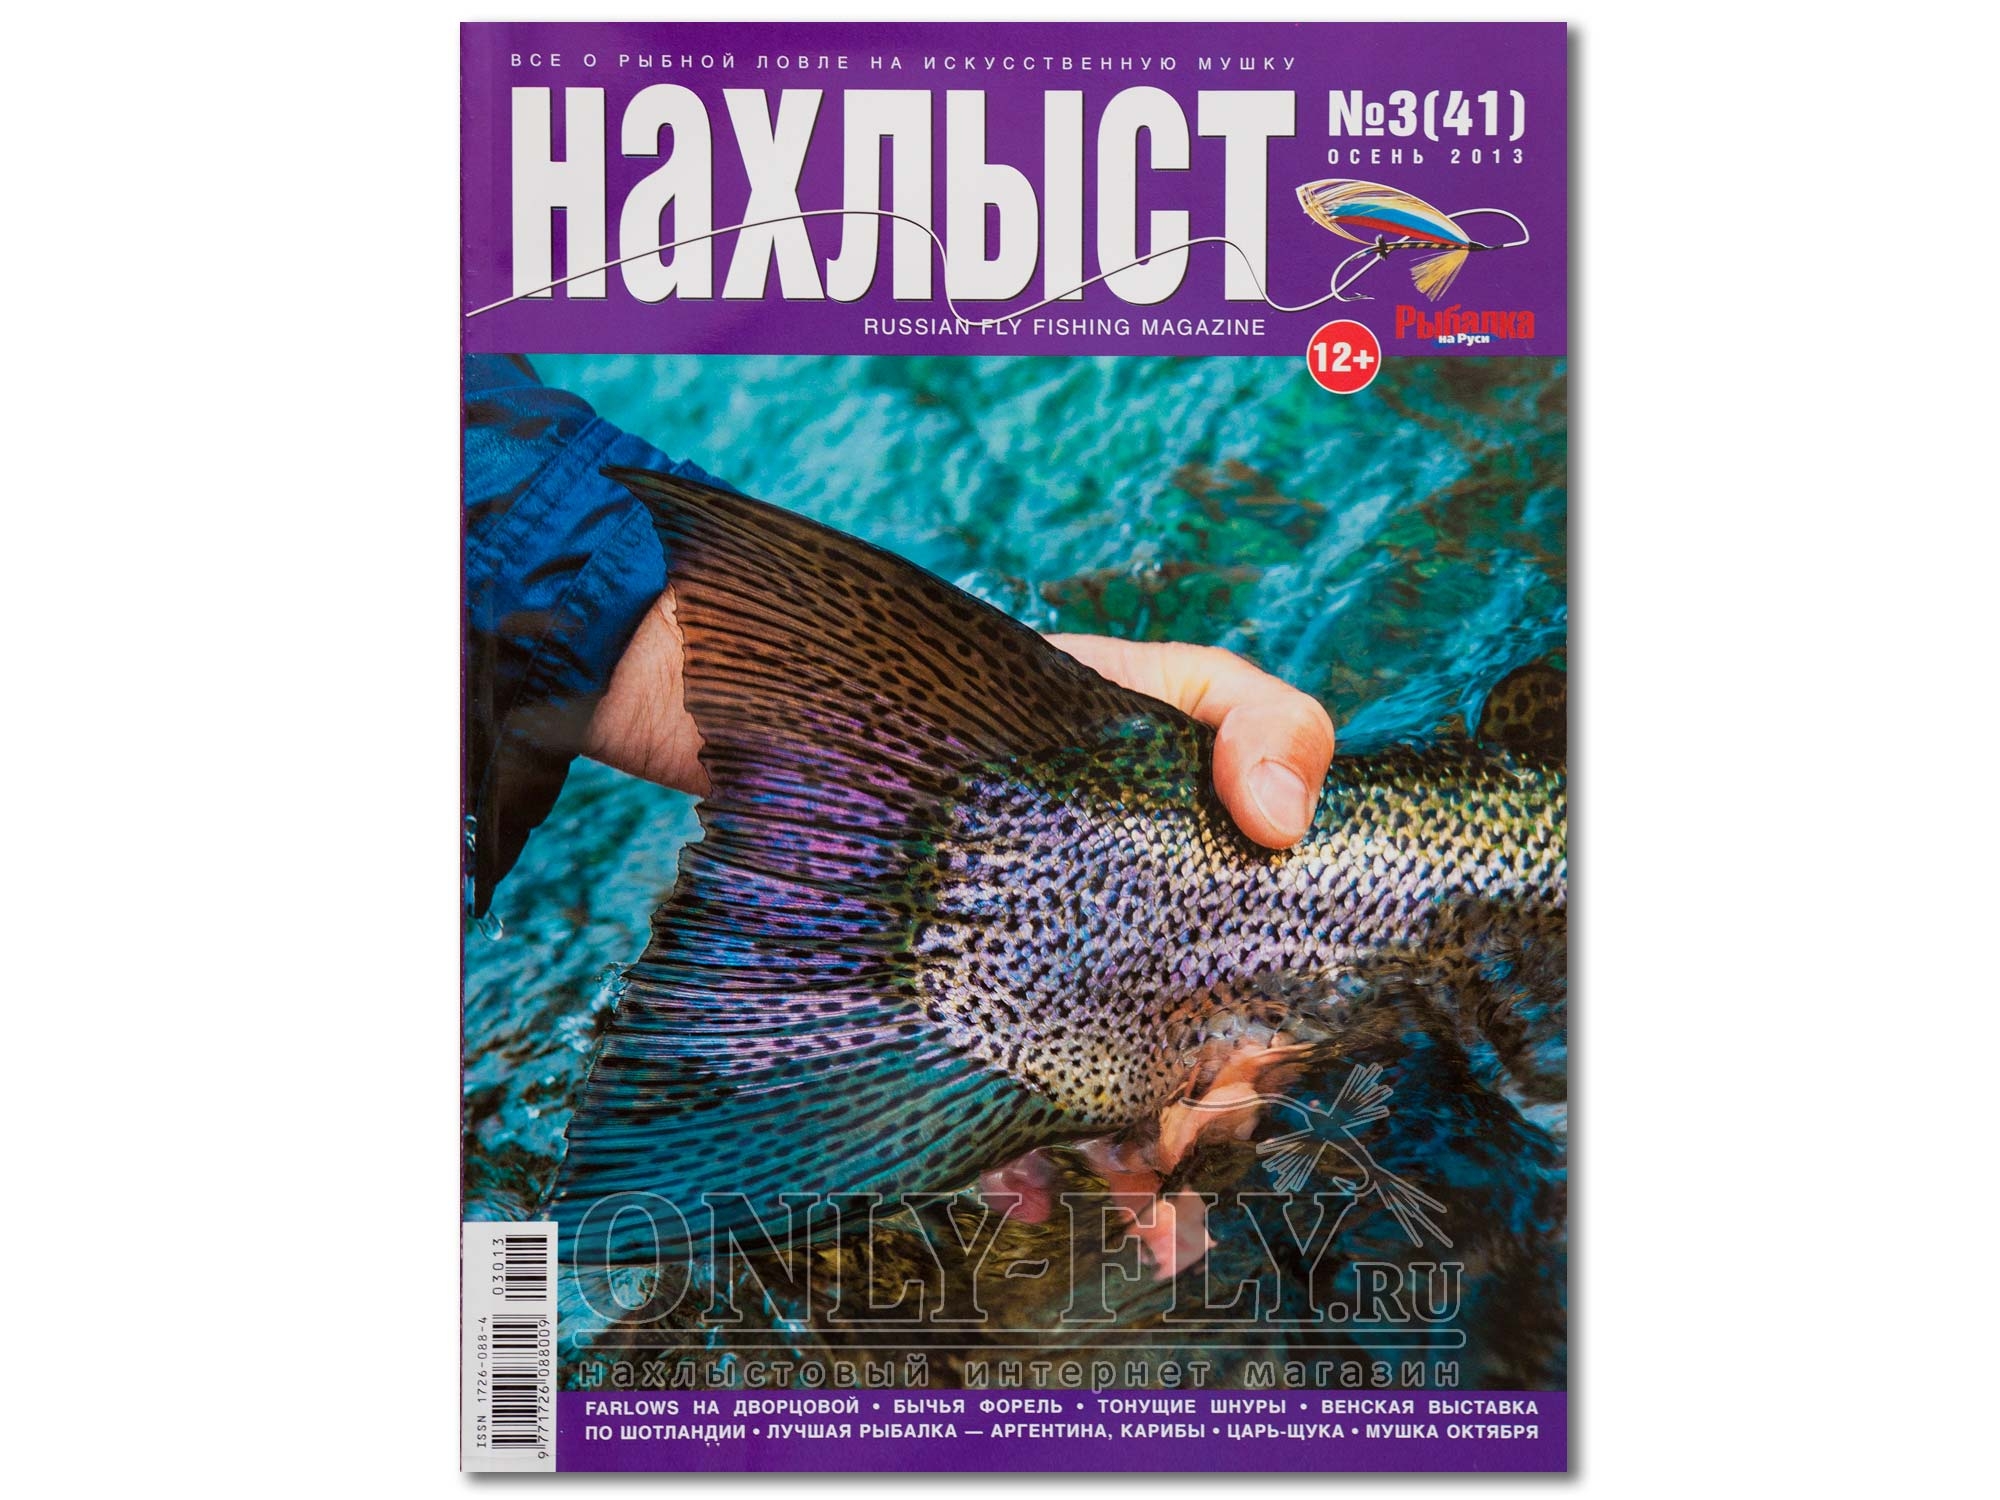 Журнал "Нахлыст" 2013 Осень №3 (41)